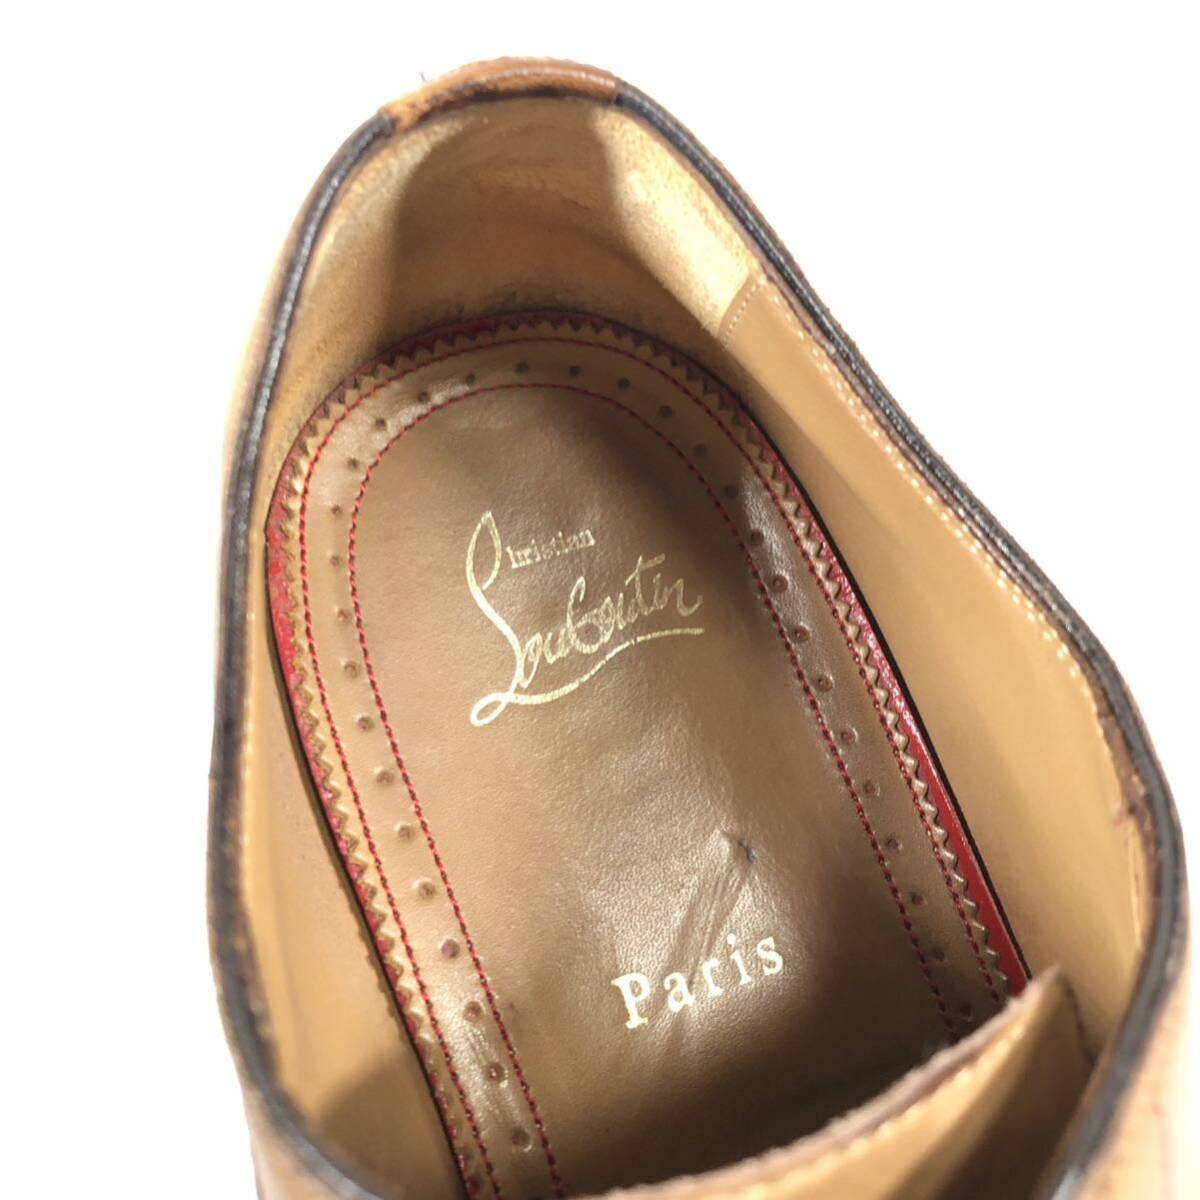 【ルブタン】本物 Louboutin 靴 27cm 茶 ストレートチップ ビジネスシューズ 内羽根式 本革 レザー 男性用 メンズ イタリア製 42_画像9